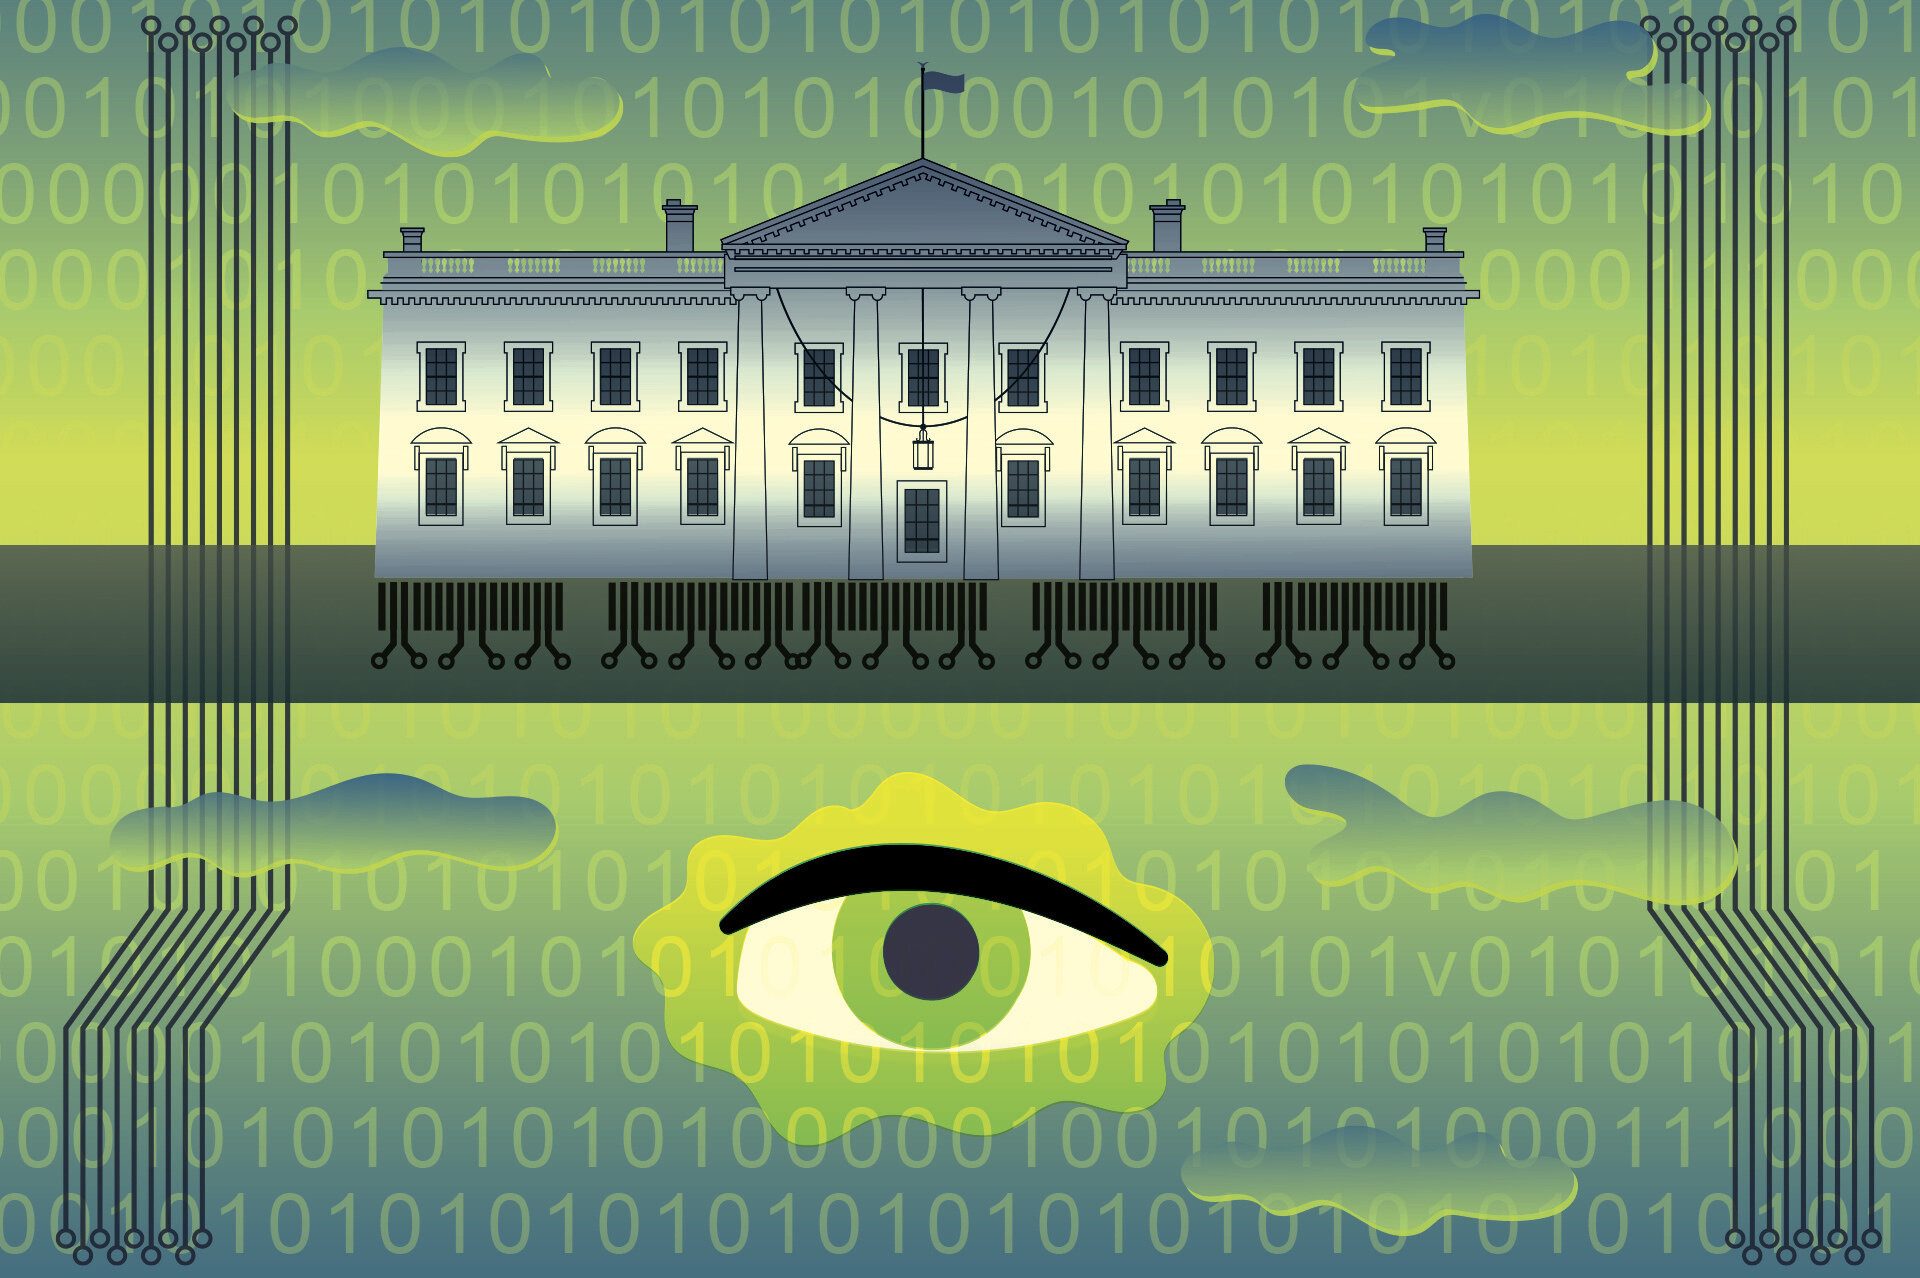 Vita huset efterlyser starkare skydd mot risker med artificiell intelligens